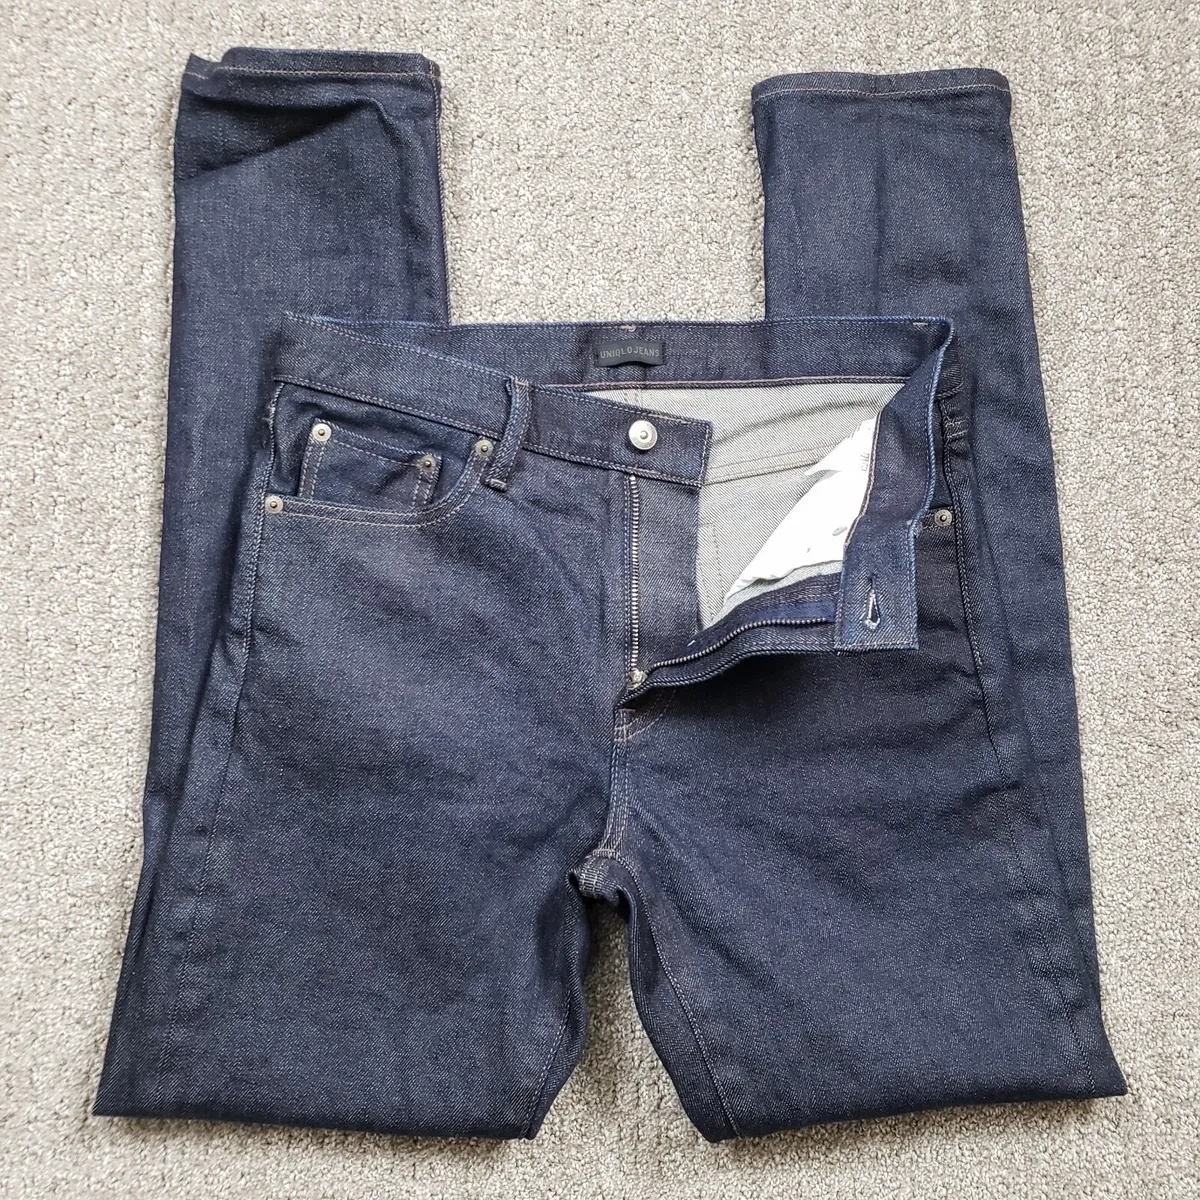 Straight Slim Selvedge Jeans - Dark blue - Men